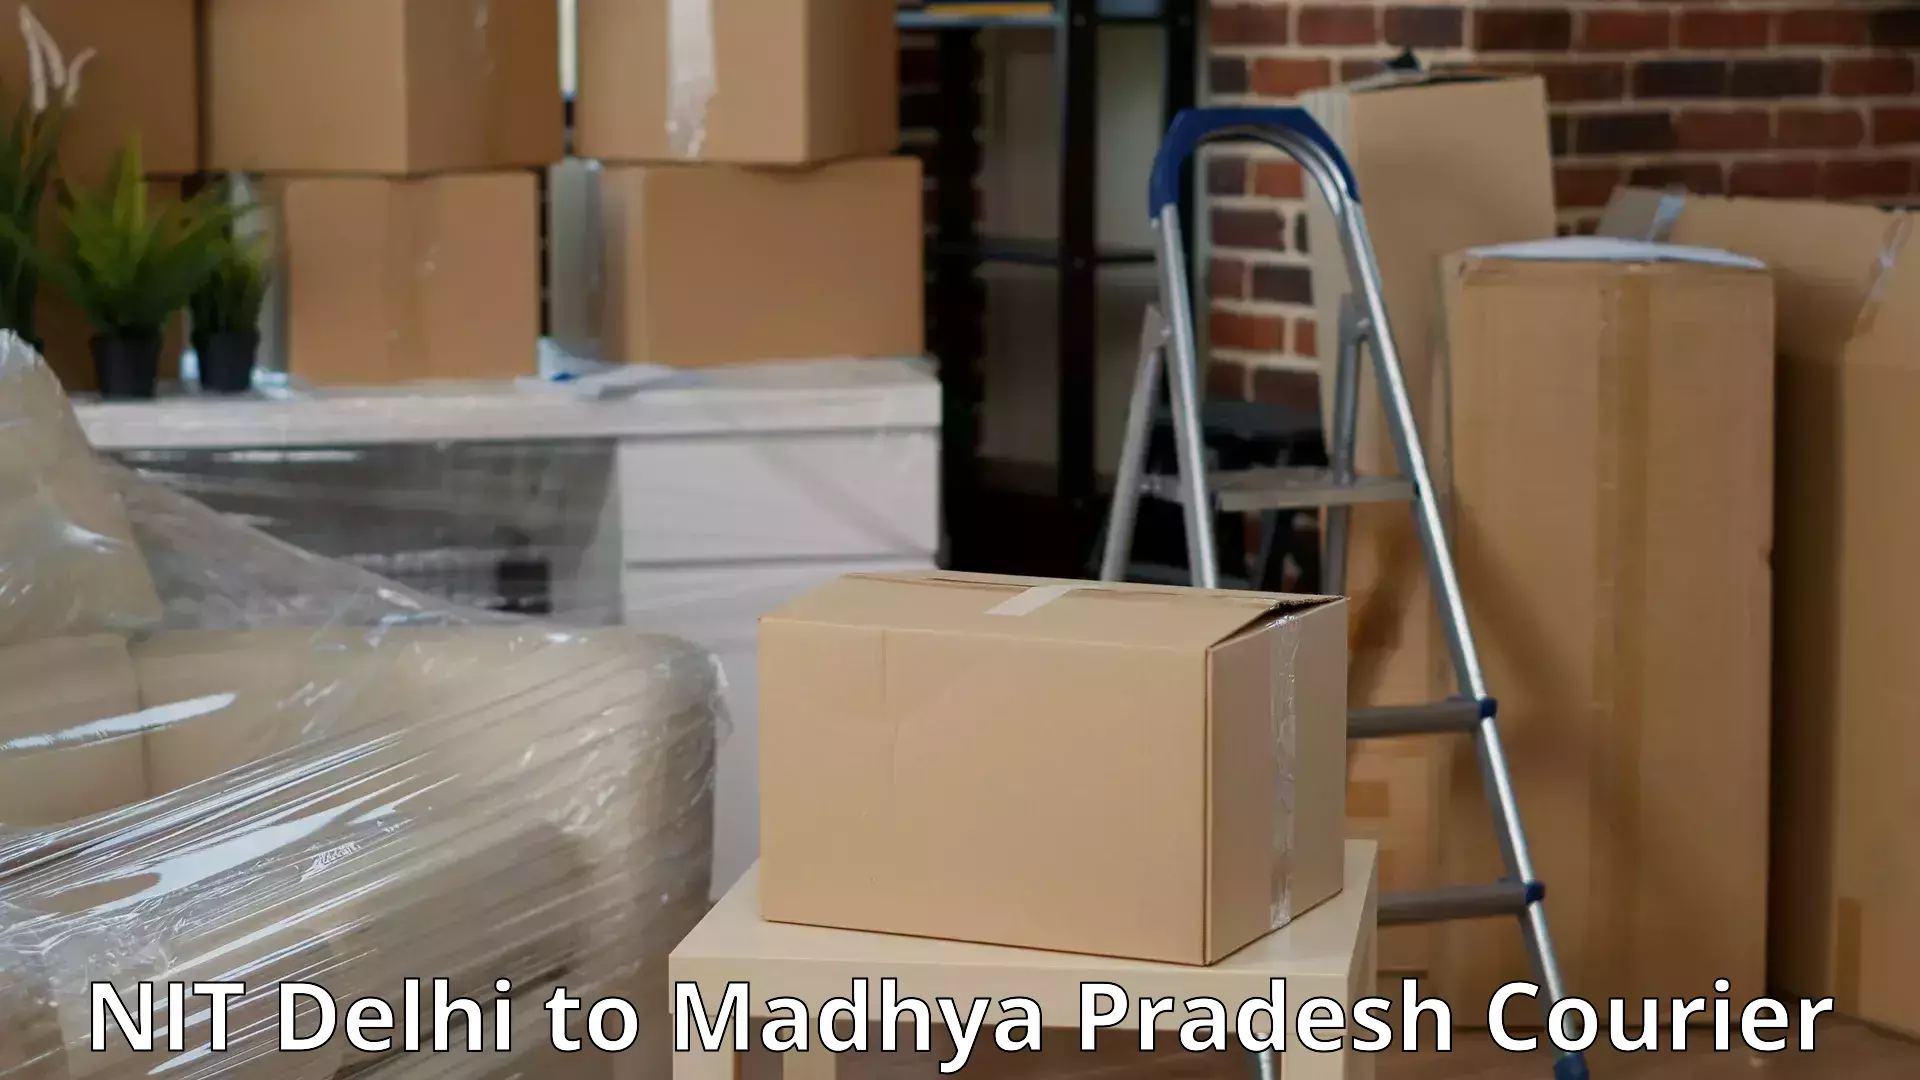 Professional movers NIT Delhi to Garh Rewa